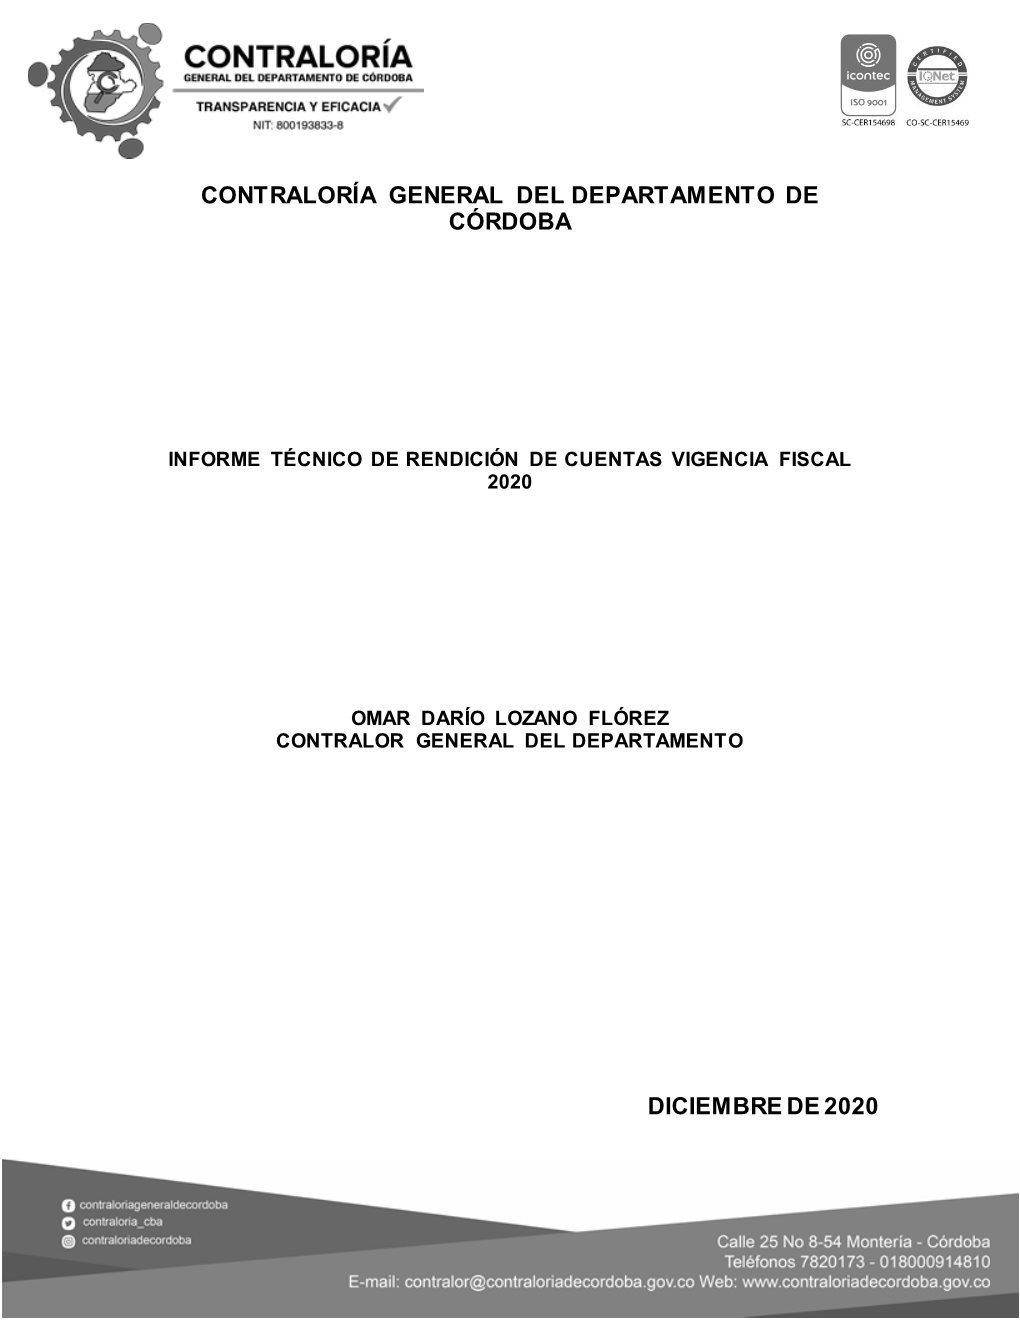 Contraloría General Del Departamento De Córdoba Diciembre De 2020